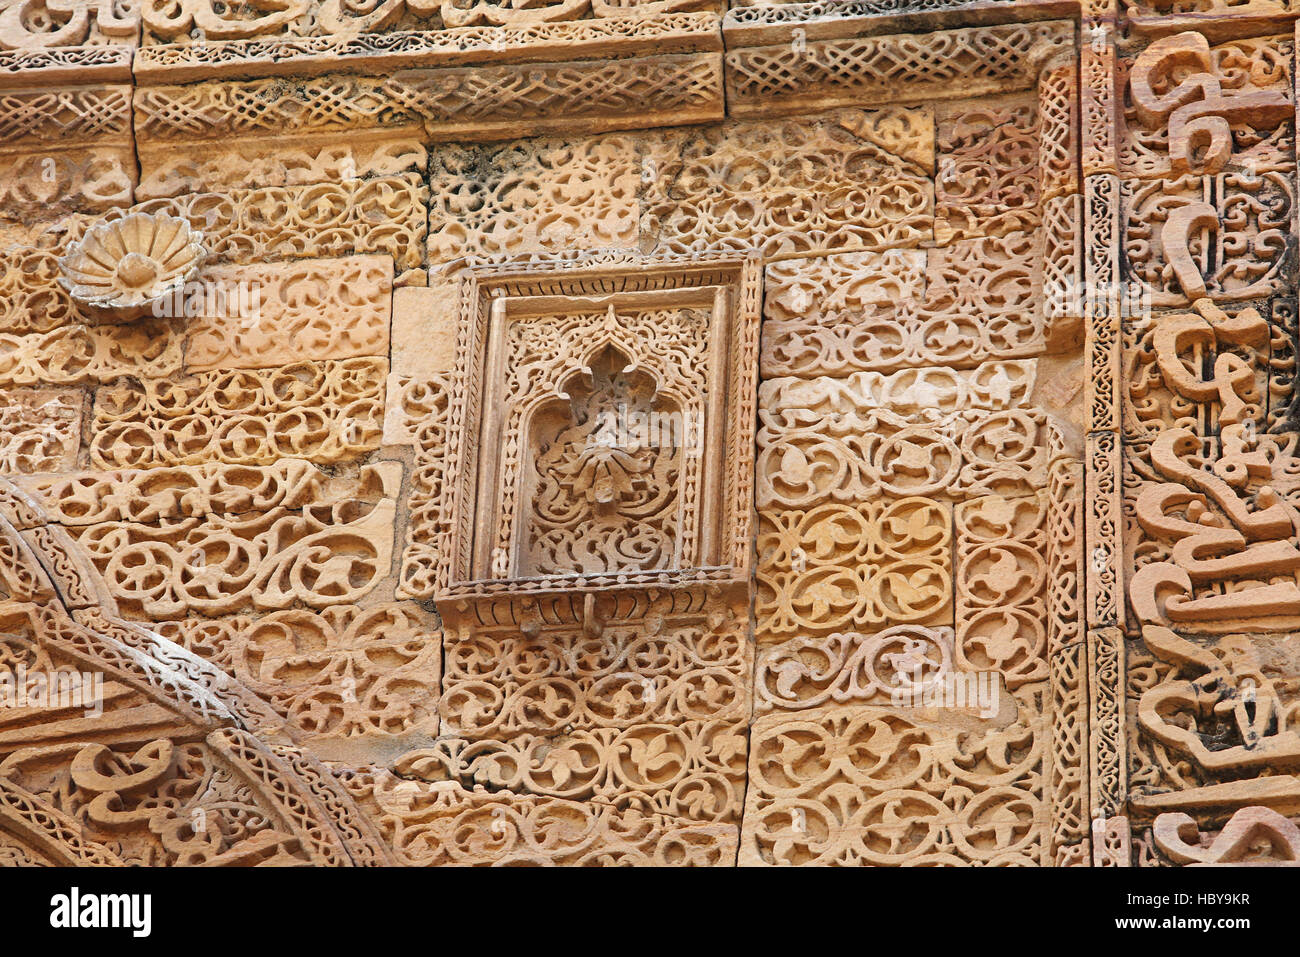 Inscription sur mur, Adhai Din Ka Jhonpra, Ajmer, Rajasthan, Inde. Selon la légende, la construction en 1153 n'a pris que deux jours et demi. Banque D'Images